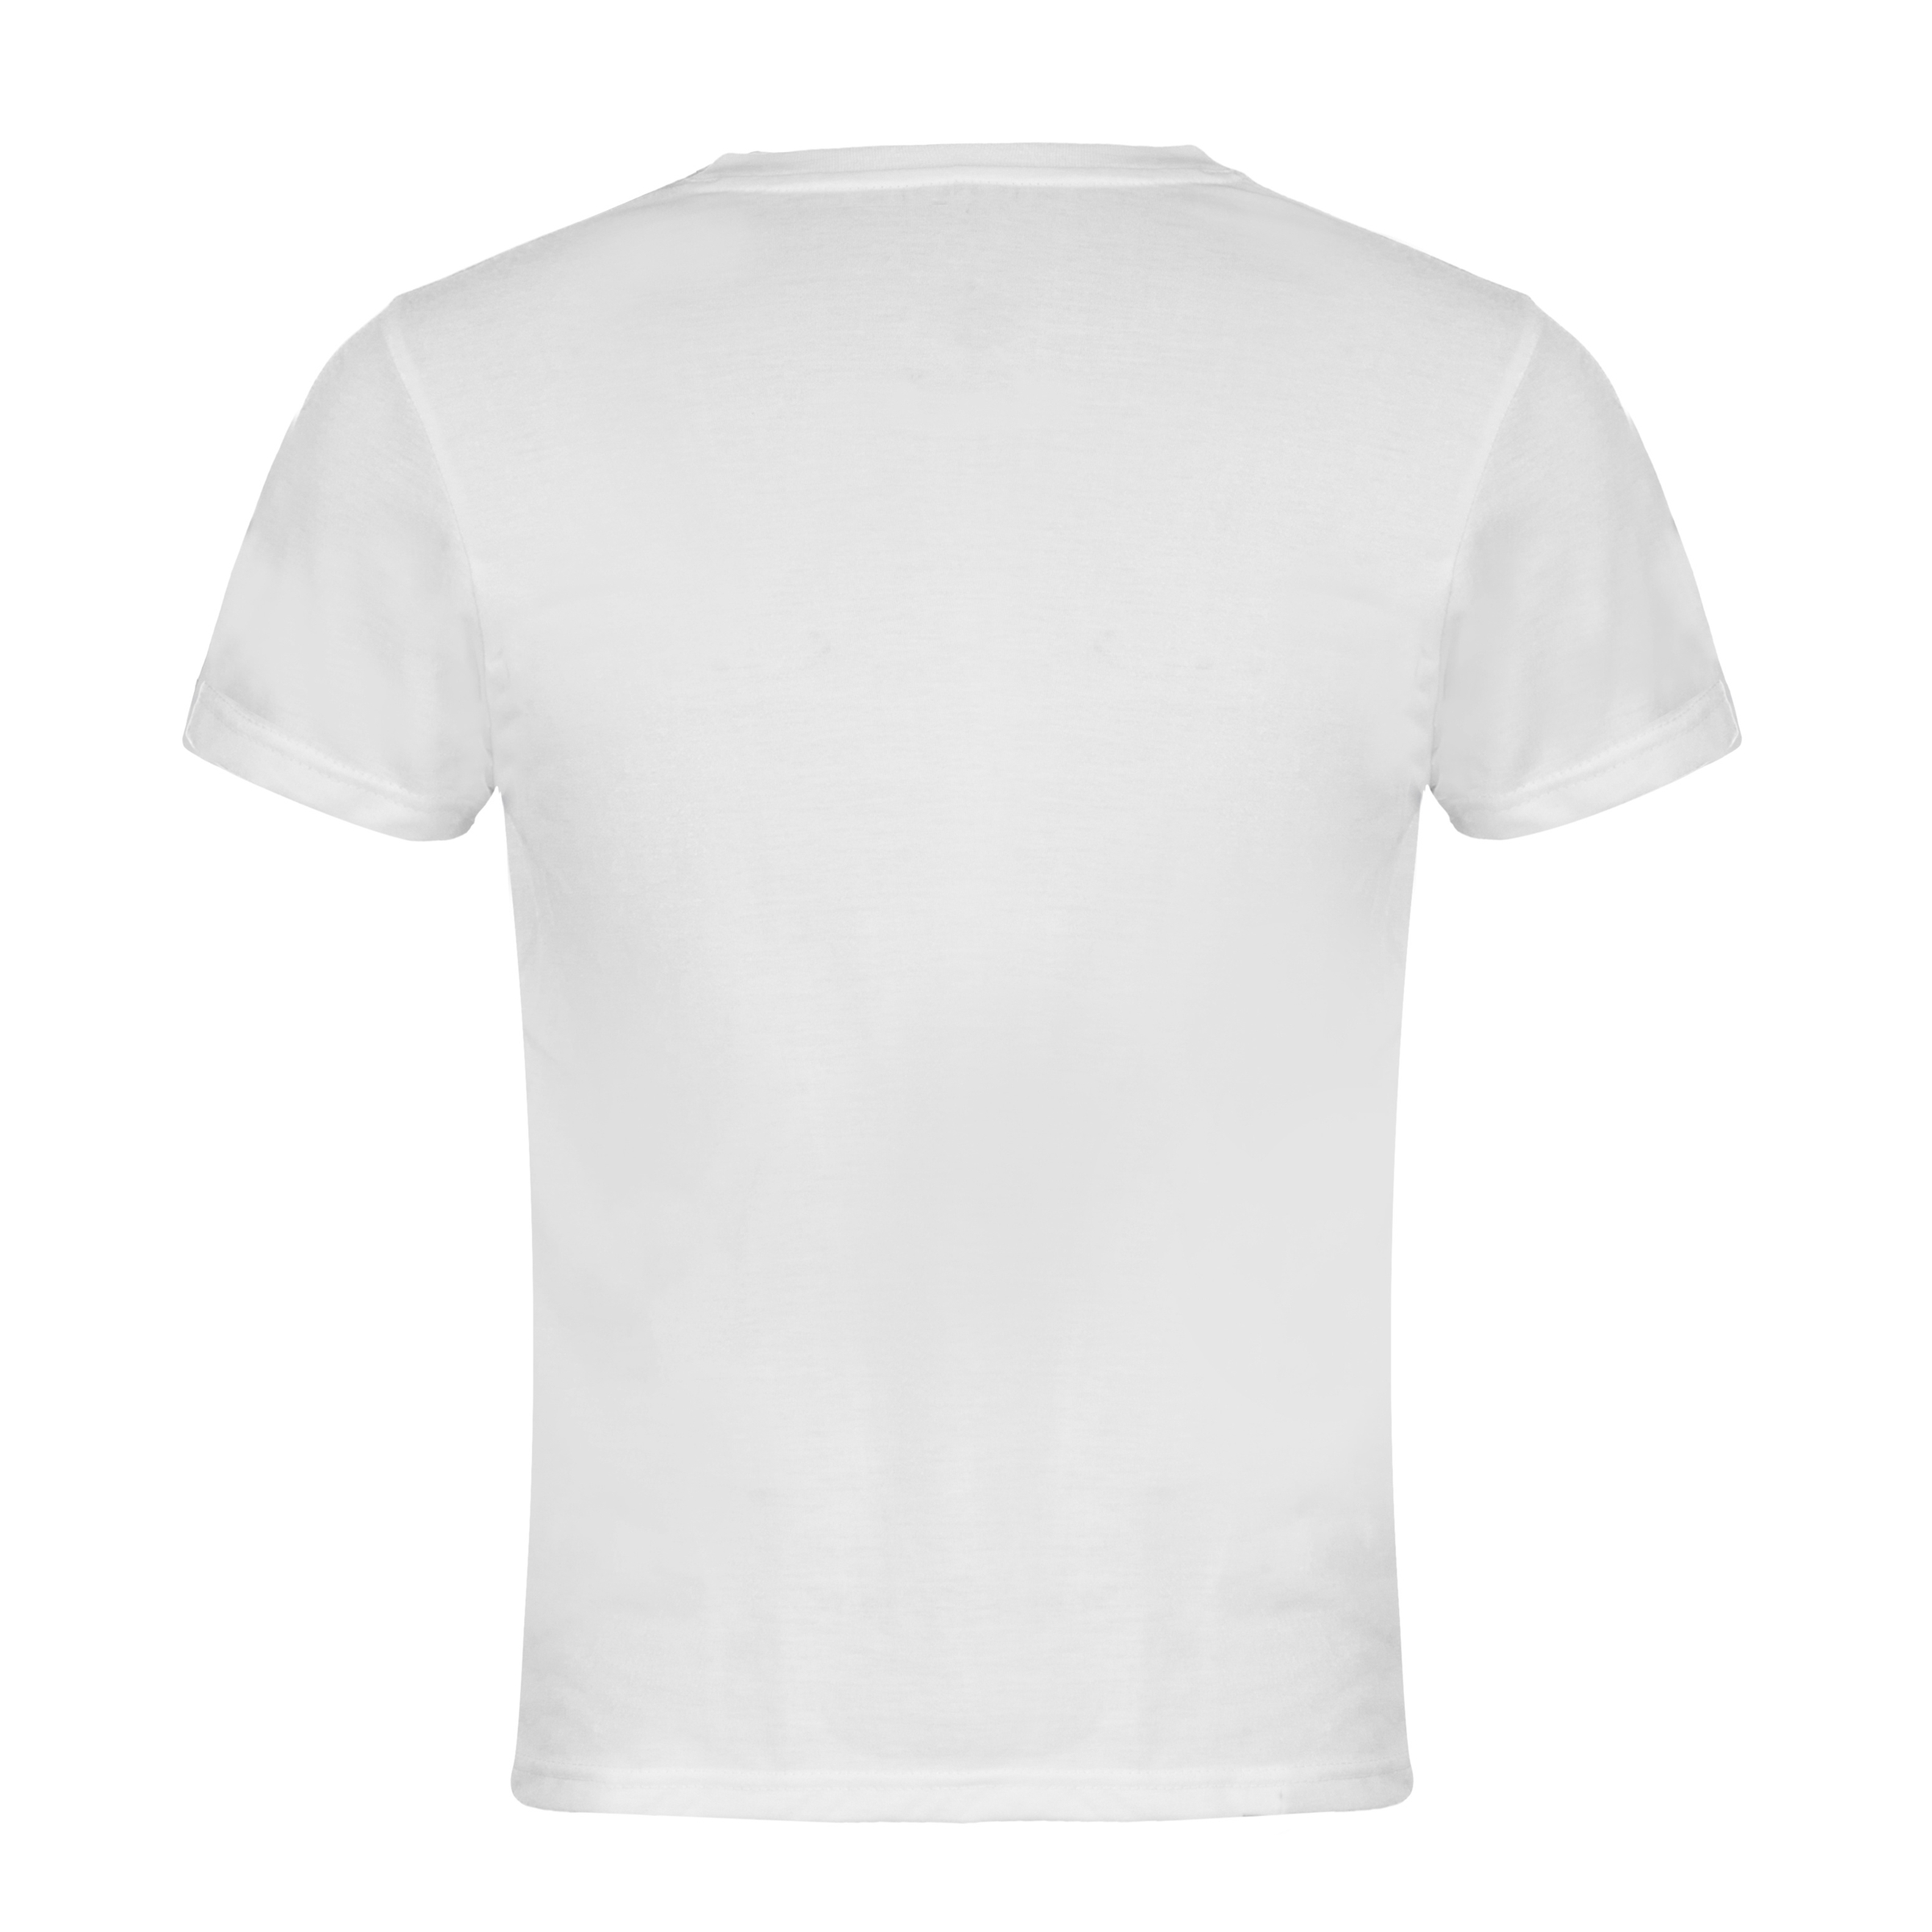 Premium Kinder T-Shirt weiß